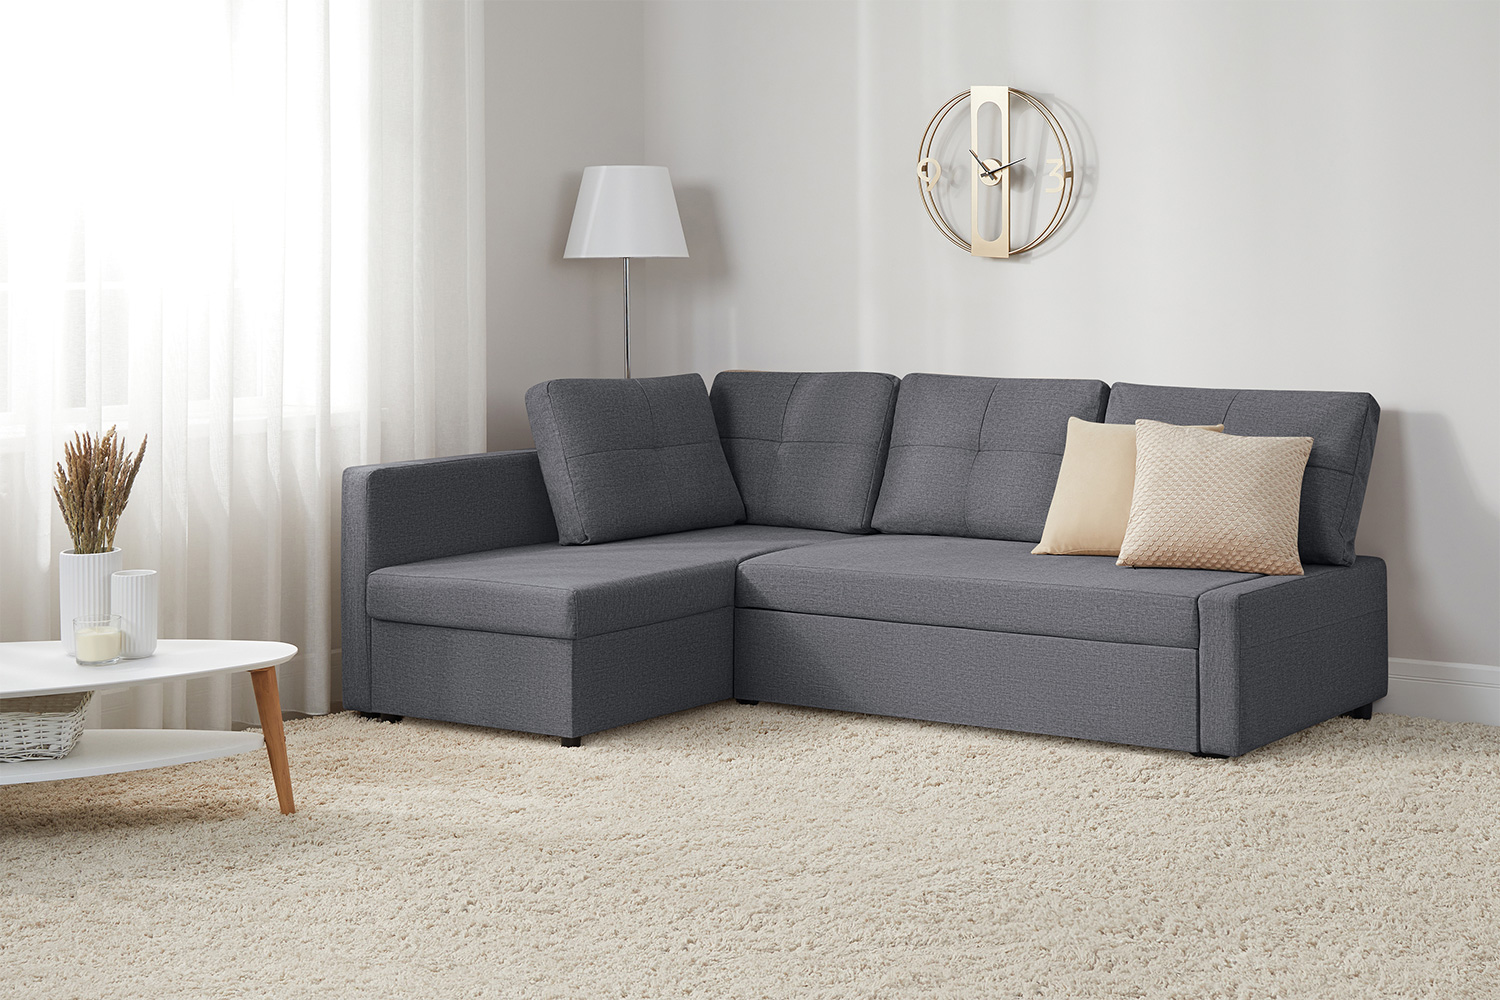 Купить Угловой диван-кровать Поло с доставкой по выгодной цене в интернет  магазине Hoff.ru. Характеристики, фото и отзывы.